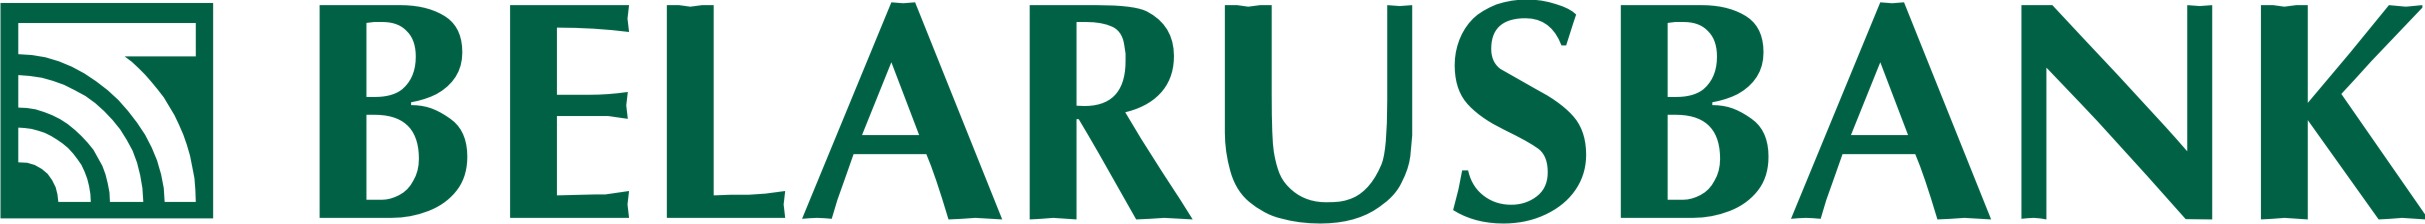 Belarusbank Brand Logo